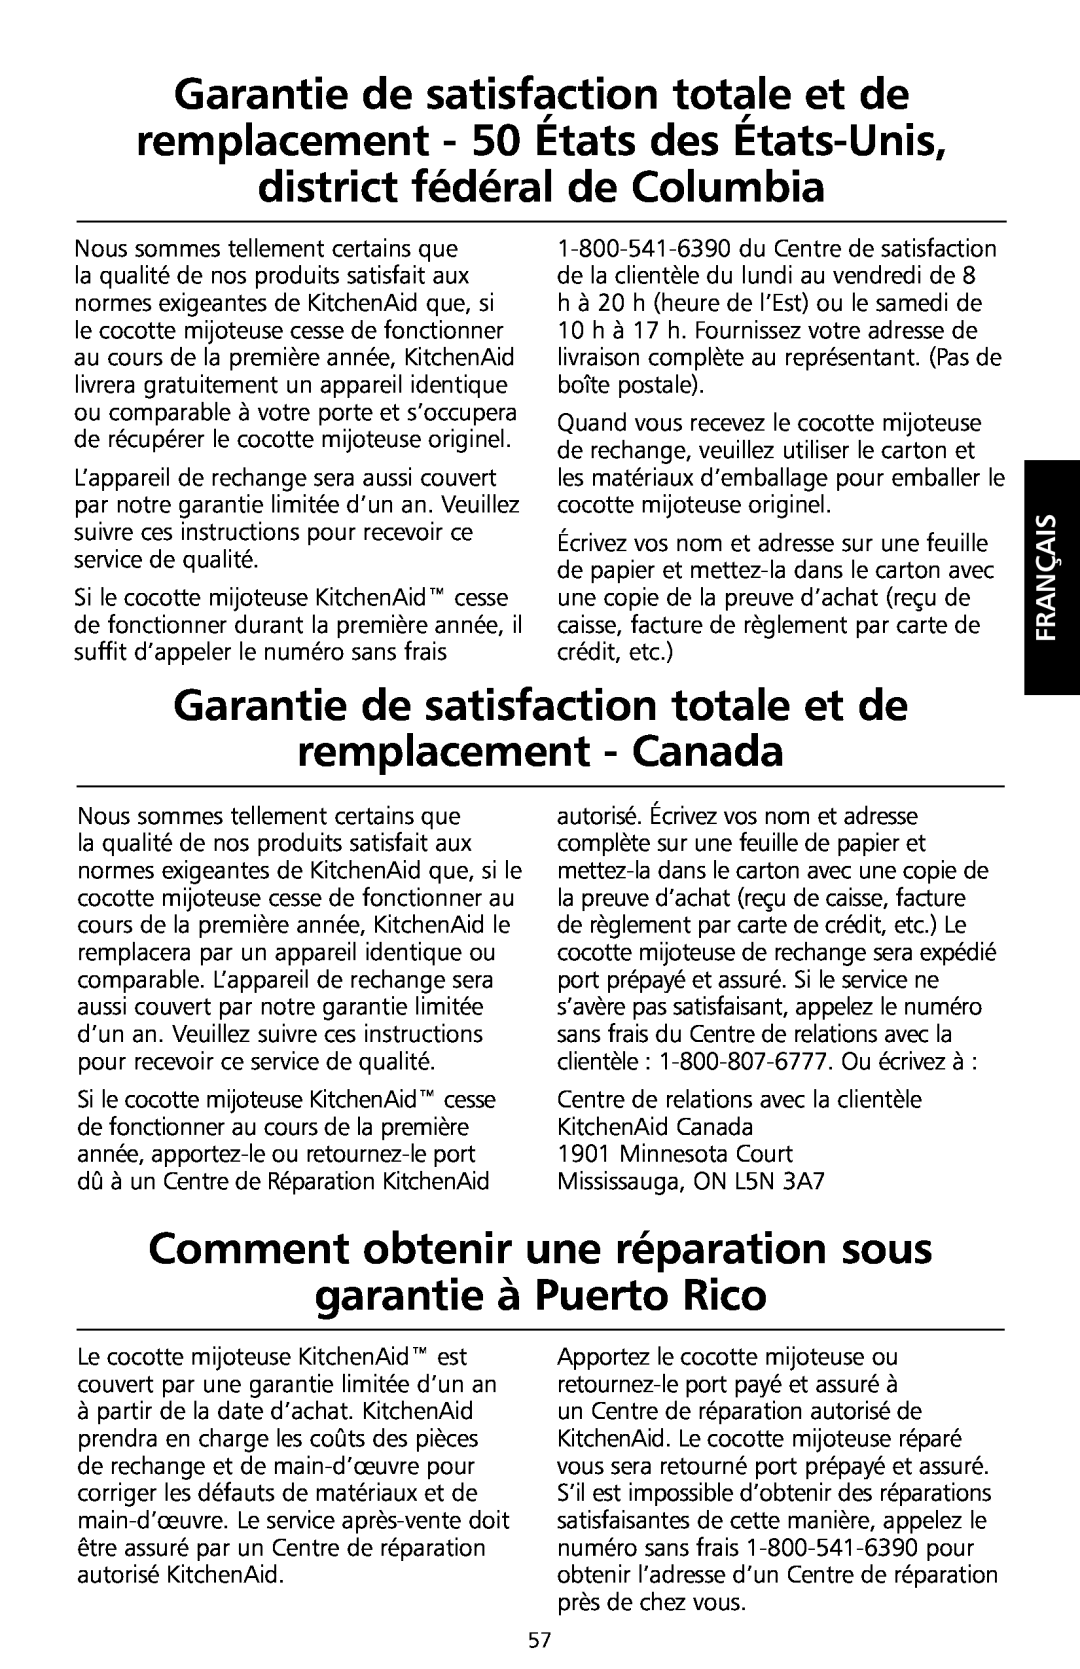 KitchenAid KSC700 manual Garantie de satisfaction totale et de remplacement - Canada, Français 